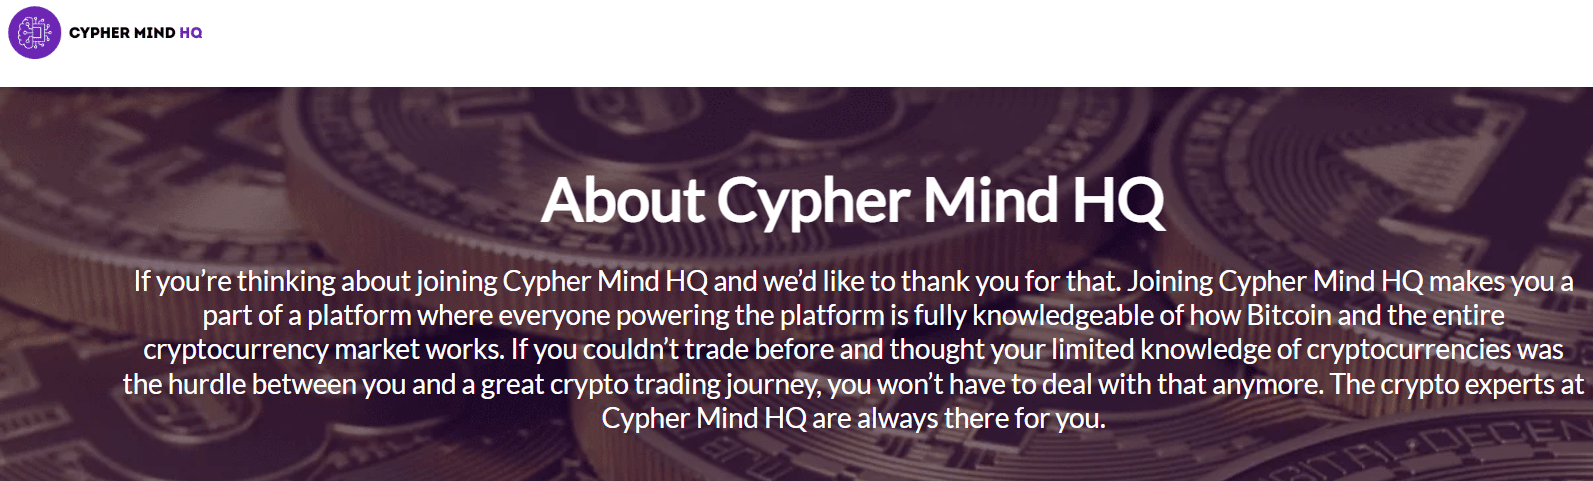 About cyphermindhq.com